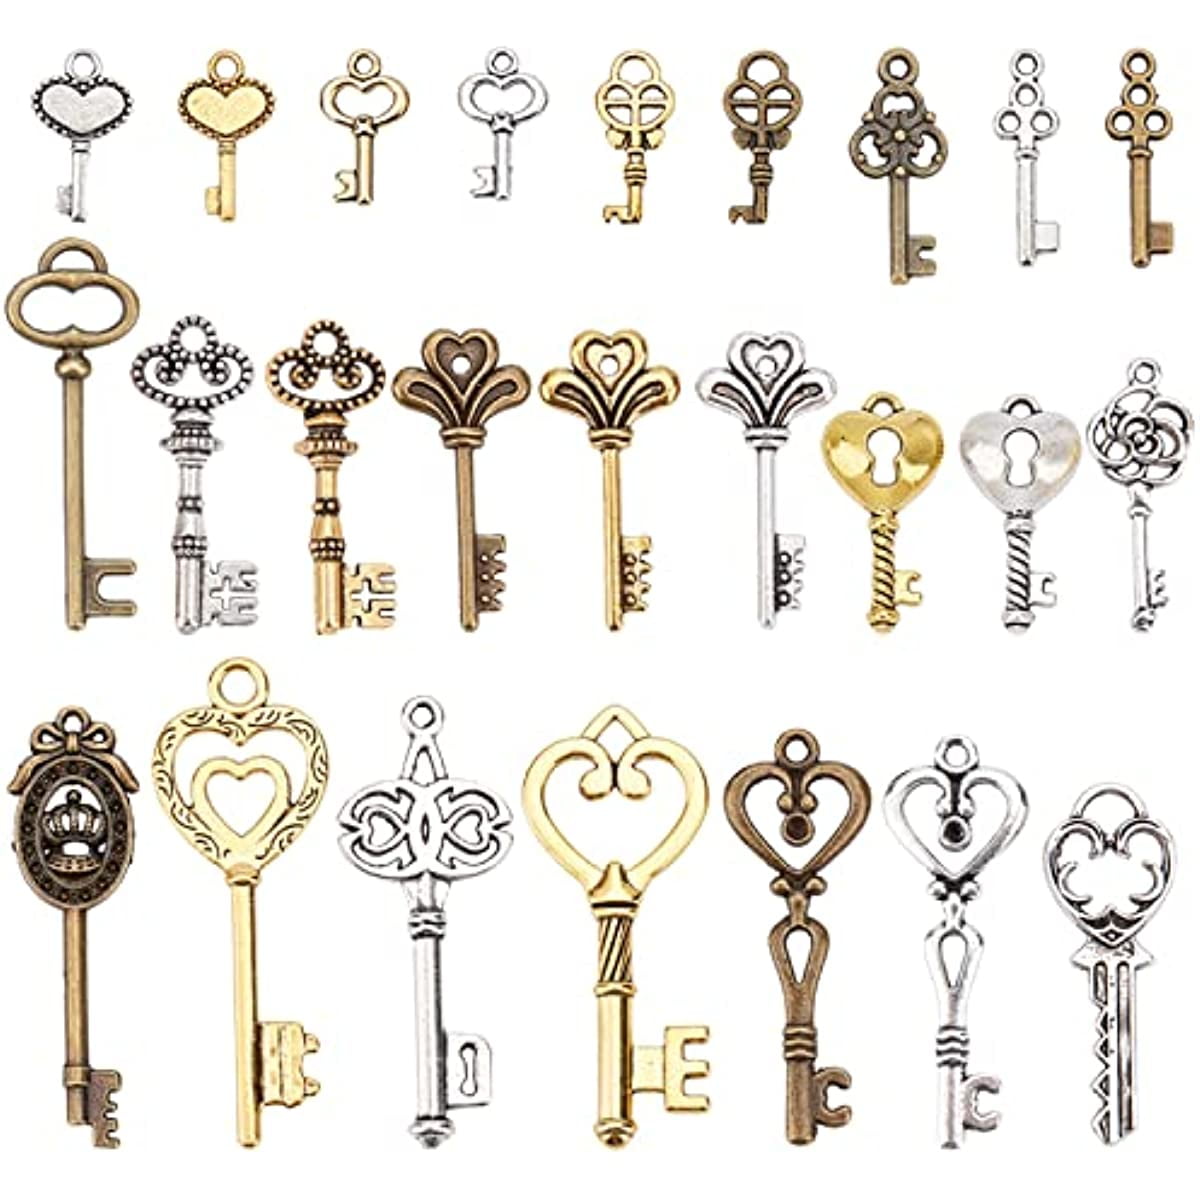 Five Large Antique Skeleton Keys Vintage Key Lot Silver 